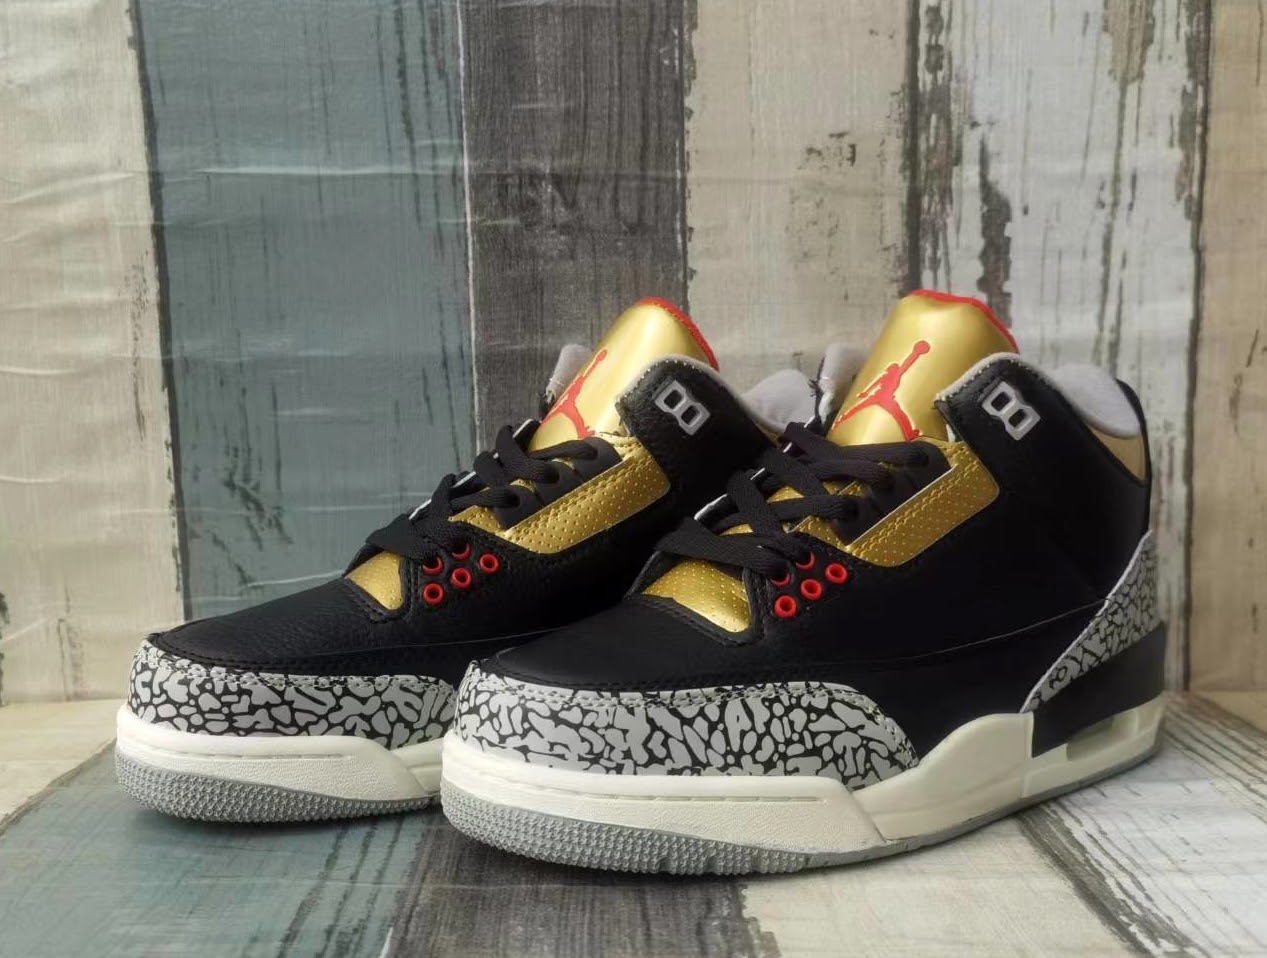 Air Jordan 3 Black Gold Make Over Sneaker For Men in 259101, cheap Jordan3, only $69!